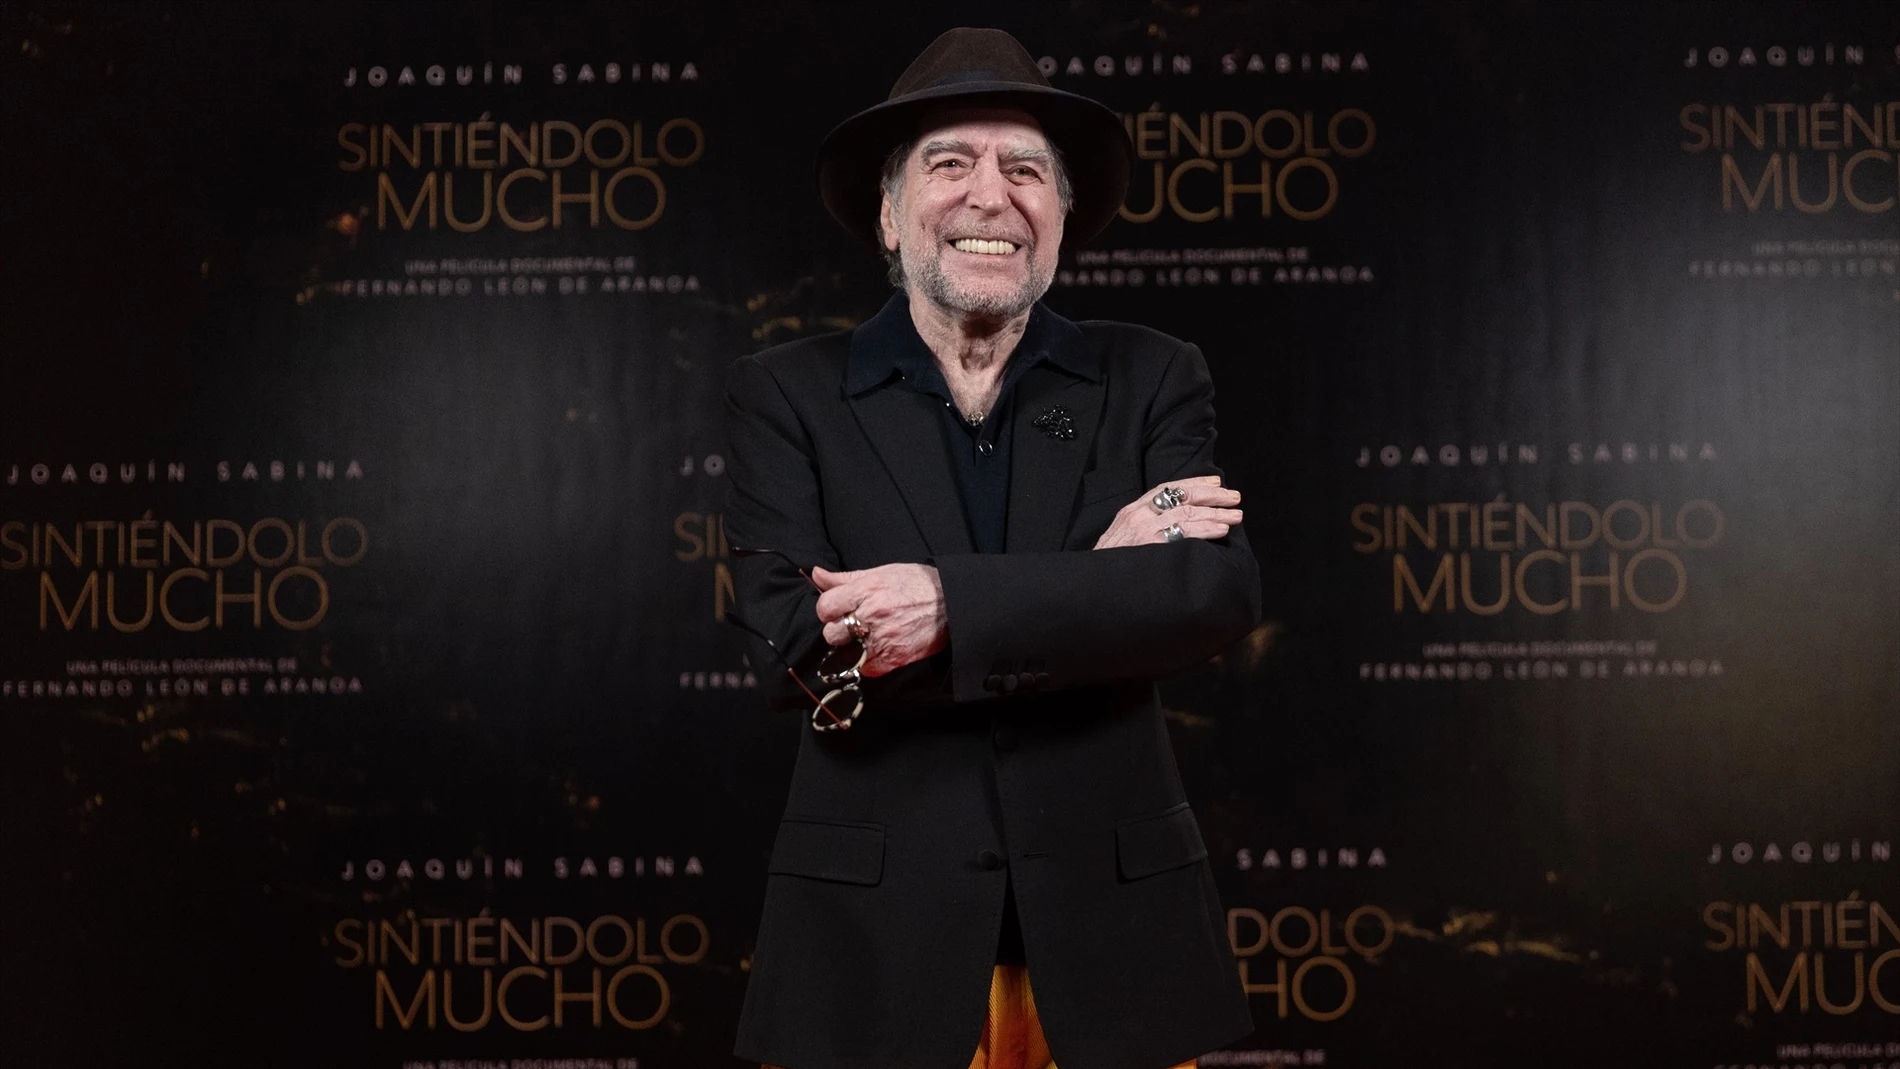 El cantautor Joaquín Sabina posa durante la presentación del documental sobre Joaquín Sabina ‘Sintiéndolo mucho’, en el Hotel Urso, a 15 de noviembre de 2022, en Madrid (España